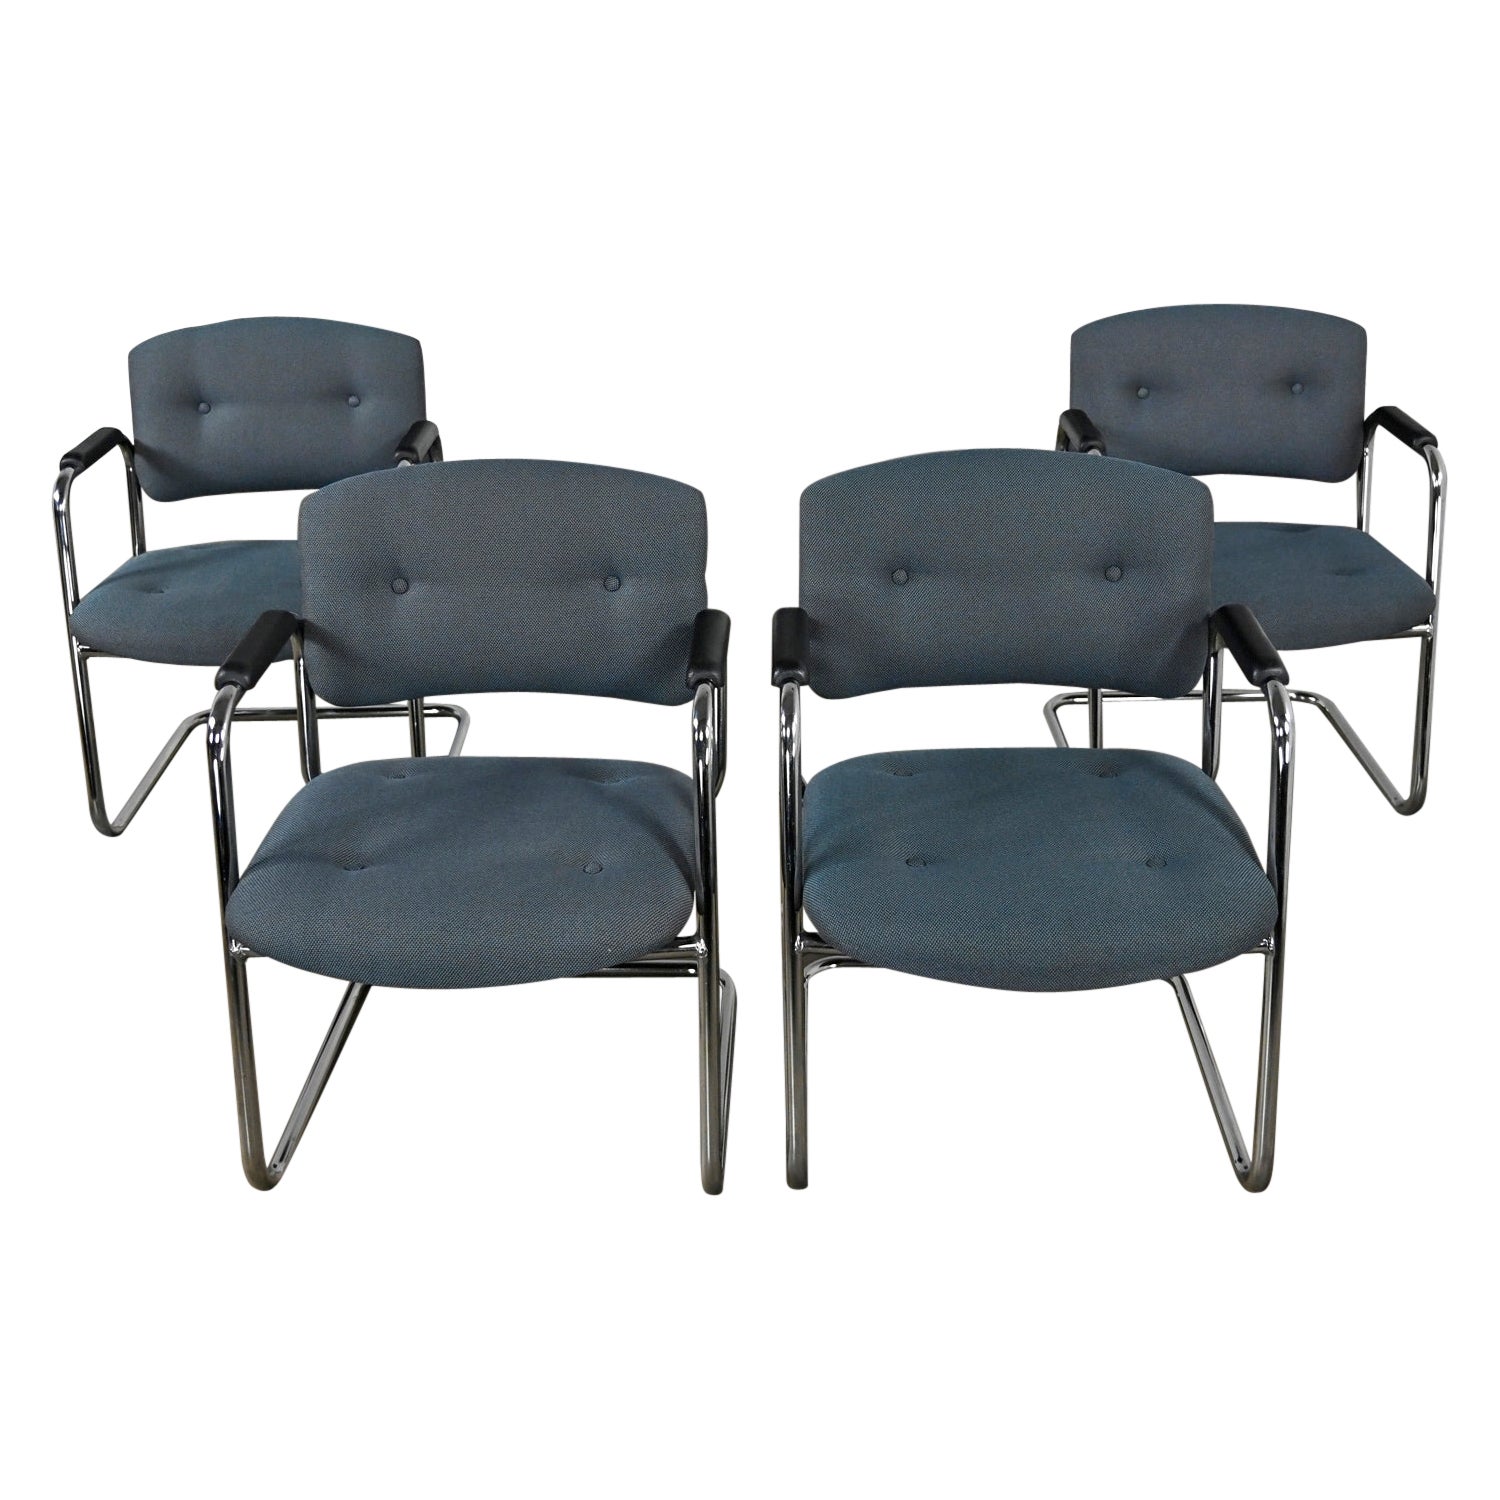 Fin du 20e siècle, chaises cantilever grises et chromées Style Steelcase Ensemble de 4 en vente